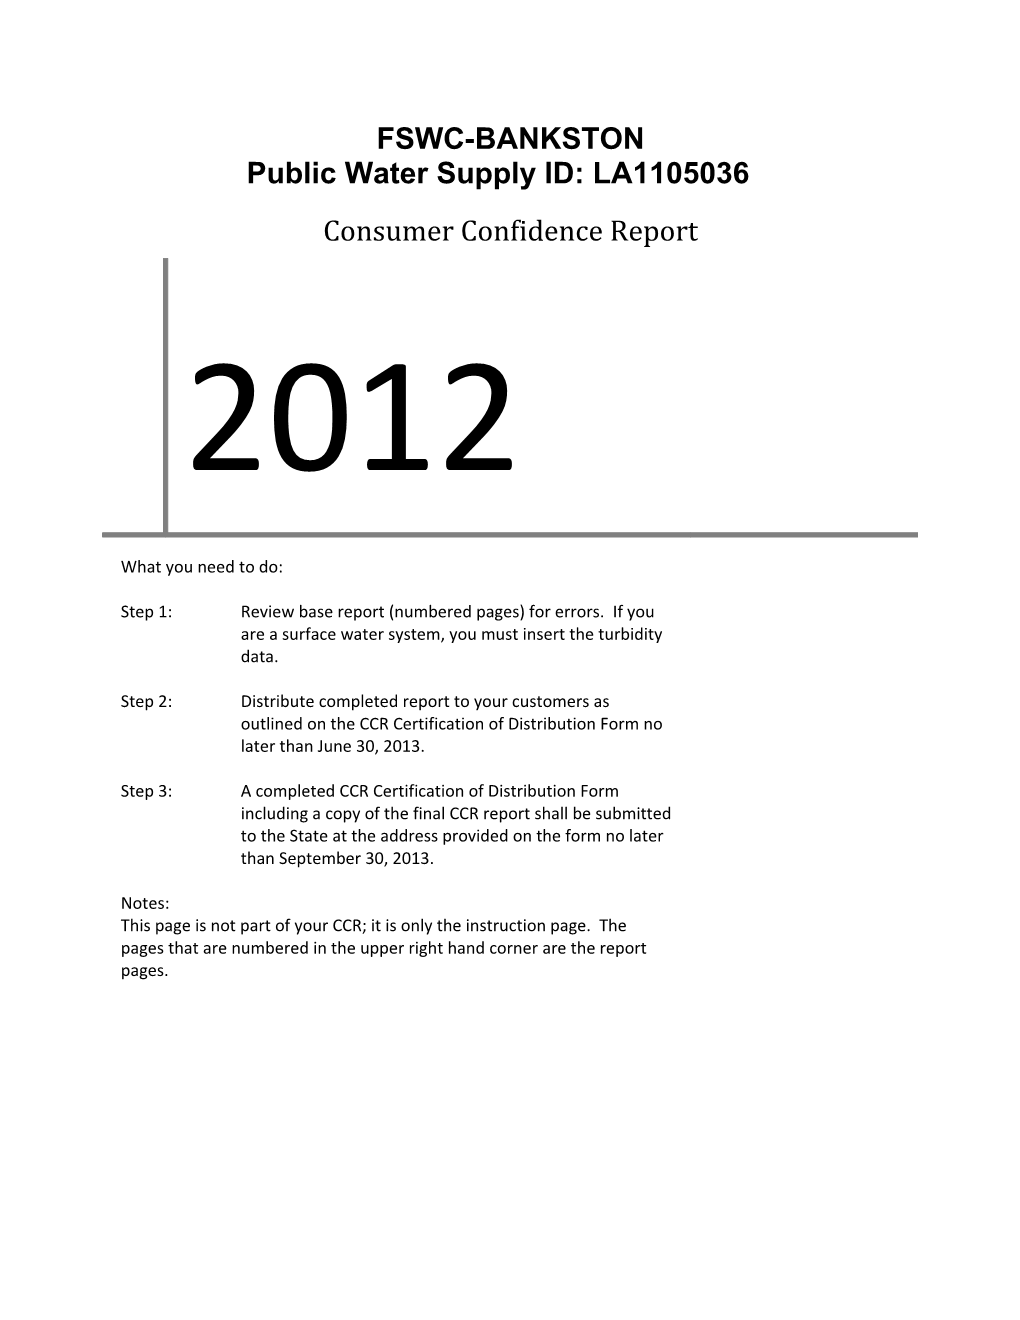 Public Water Supply ID: LA1105036